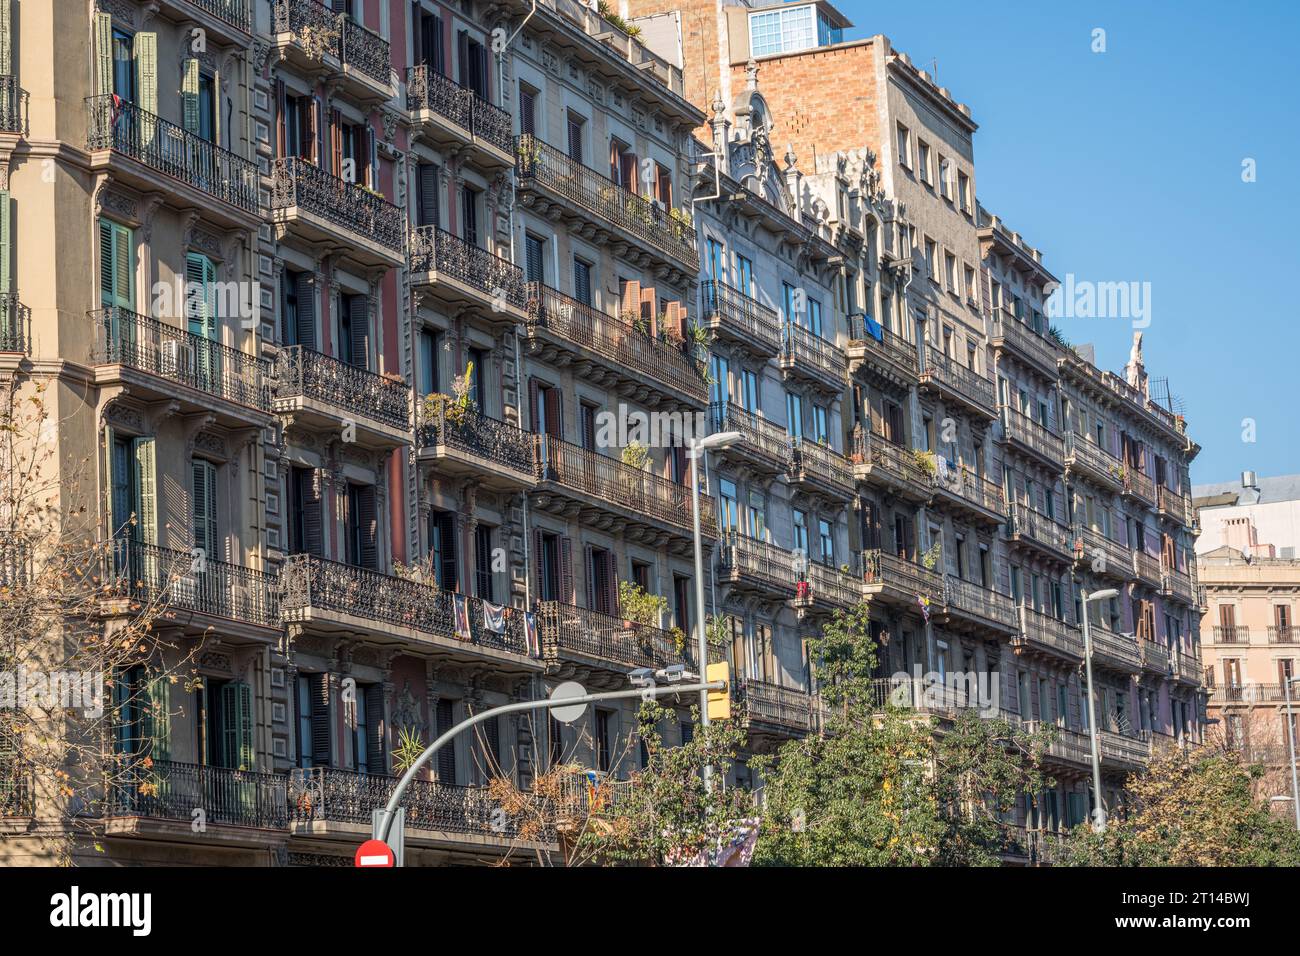 Vieux immeubles typiques d'appartements vus à Barcelone, Espagne Banque D'Images